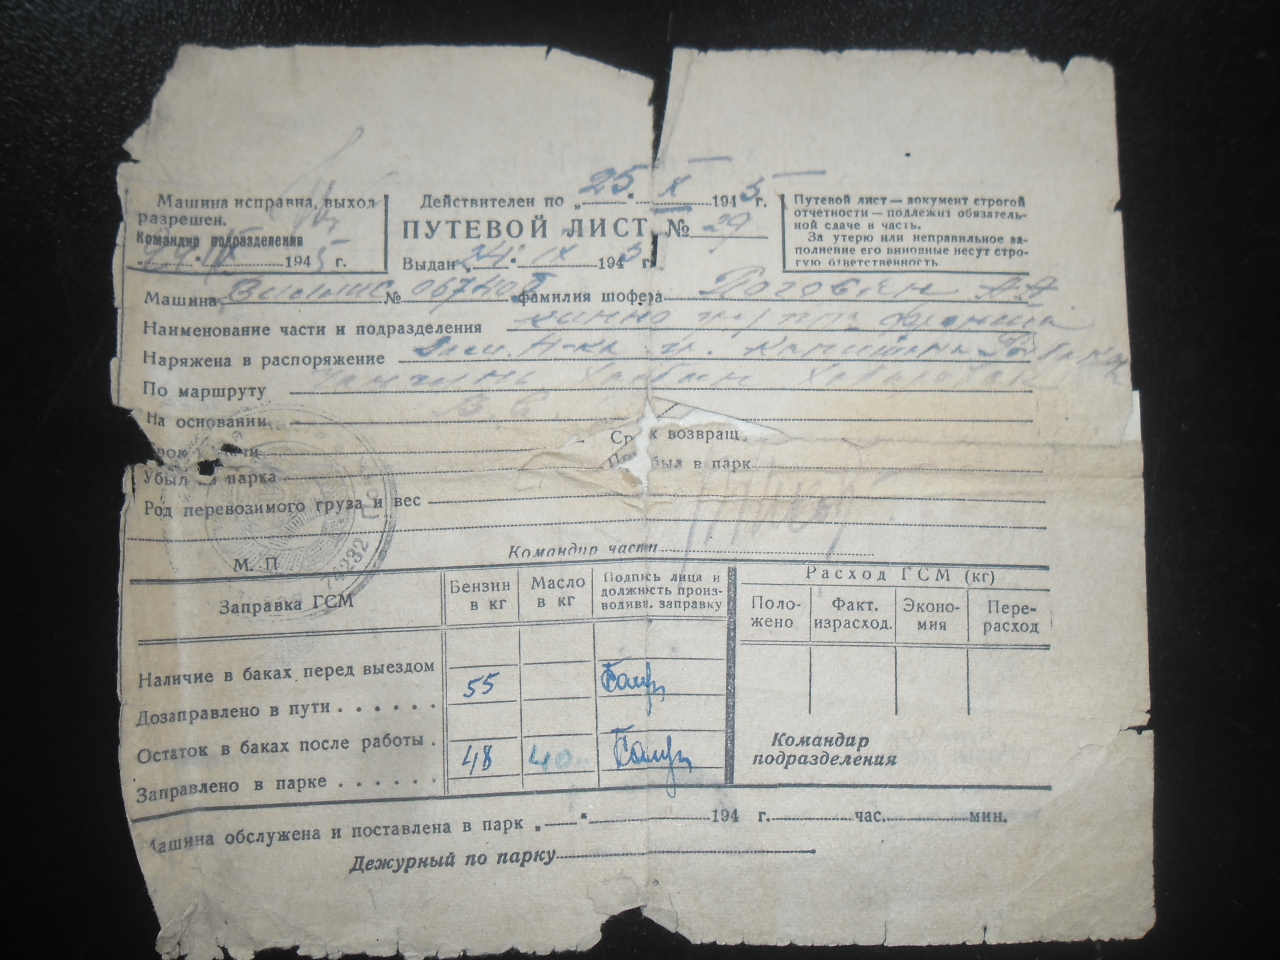 Ճանապարհային ուղեգիր՝ Անդրանիկ Արտաշի Պողոսյանի(Հայրենական պատերազմի մասնակից)